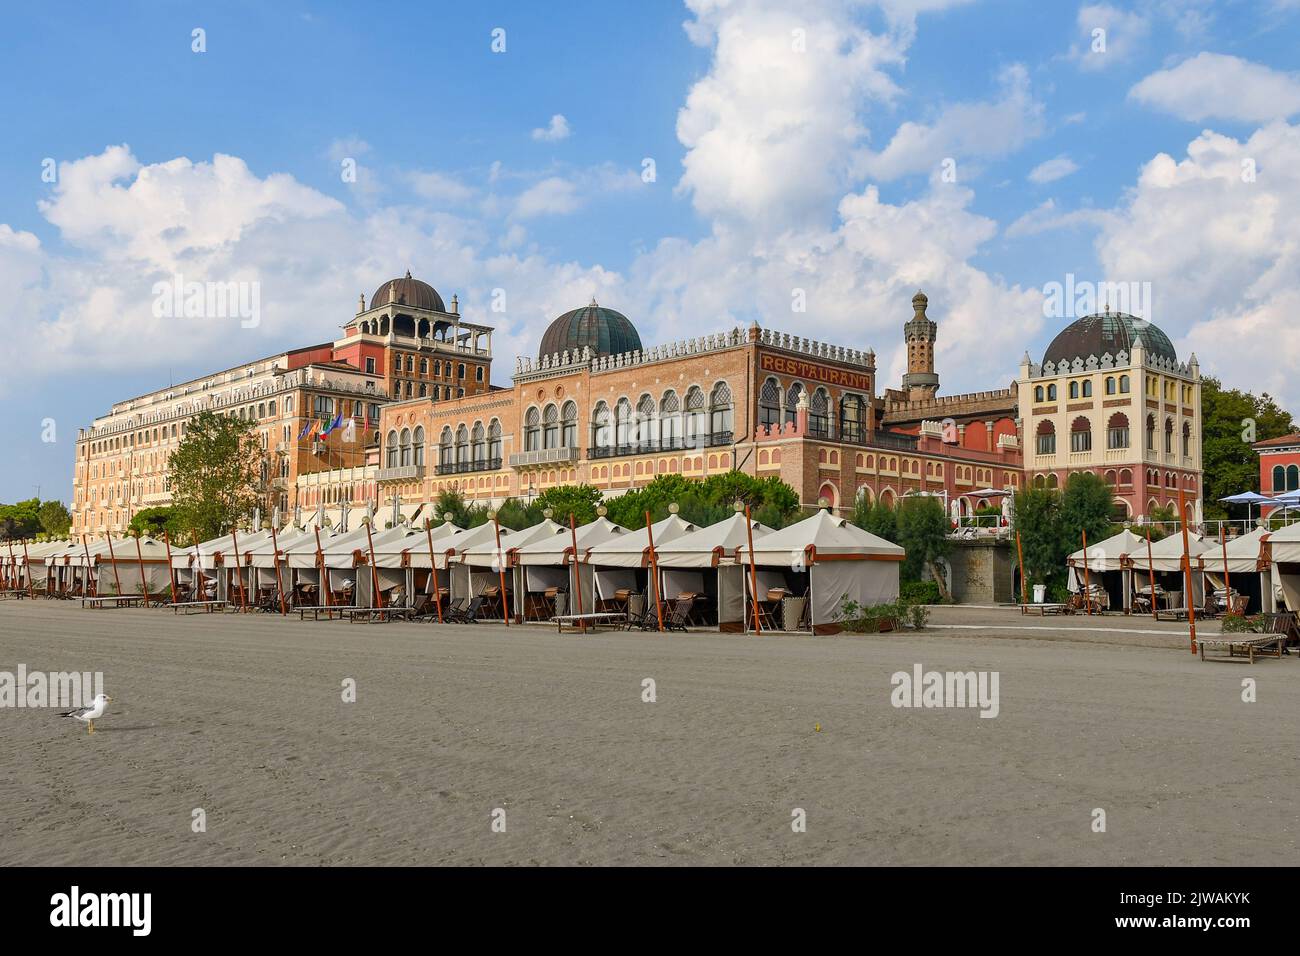 Das Hotel Excelsior ist ein historisches Gebäude am Meer, in dem Filmstars während der Internationalen Filmfestspiele von Venedig, Lido von Venedig, Venetien, Italien, zu Gast sind Stockfoto